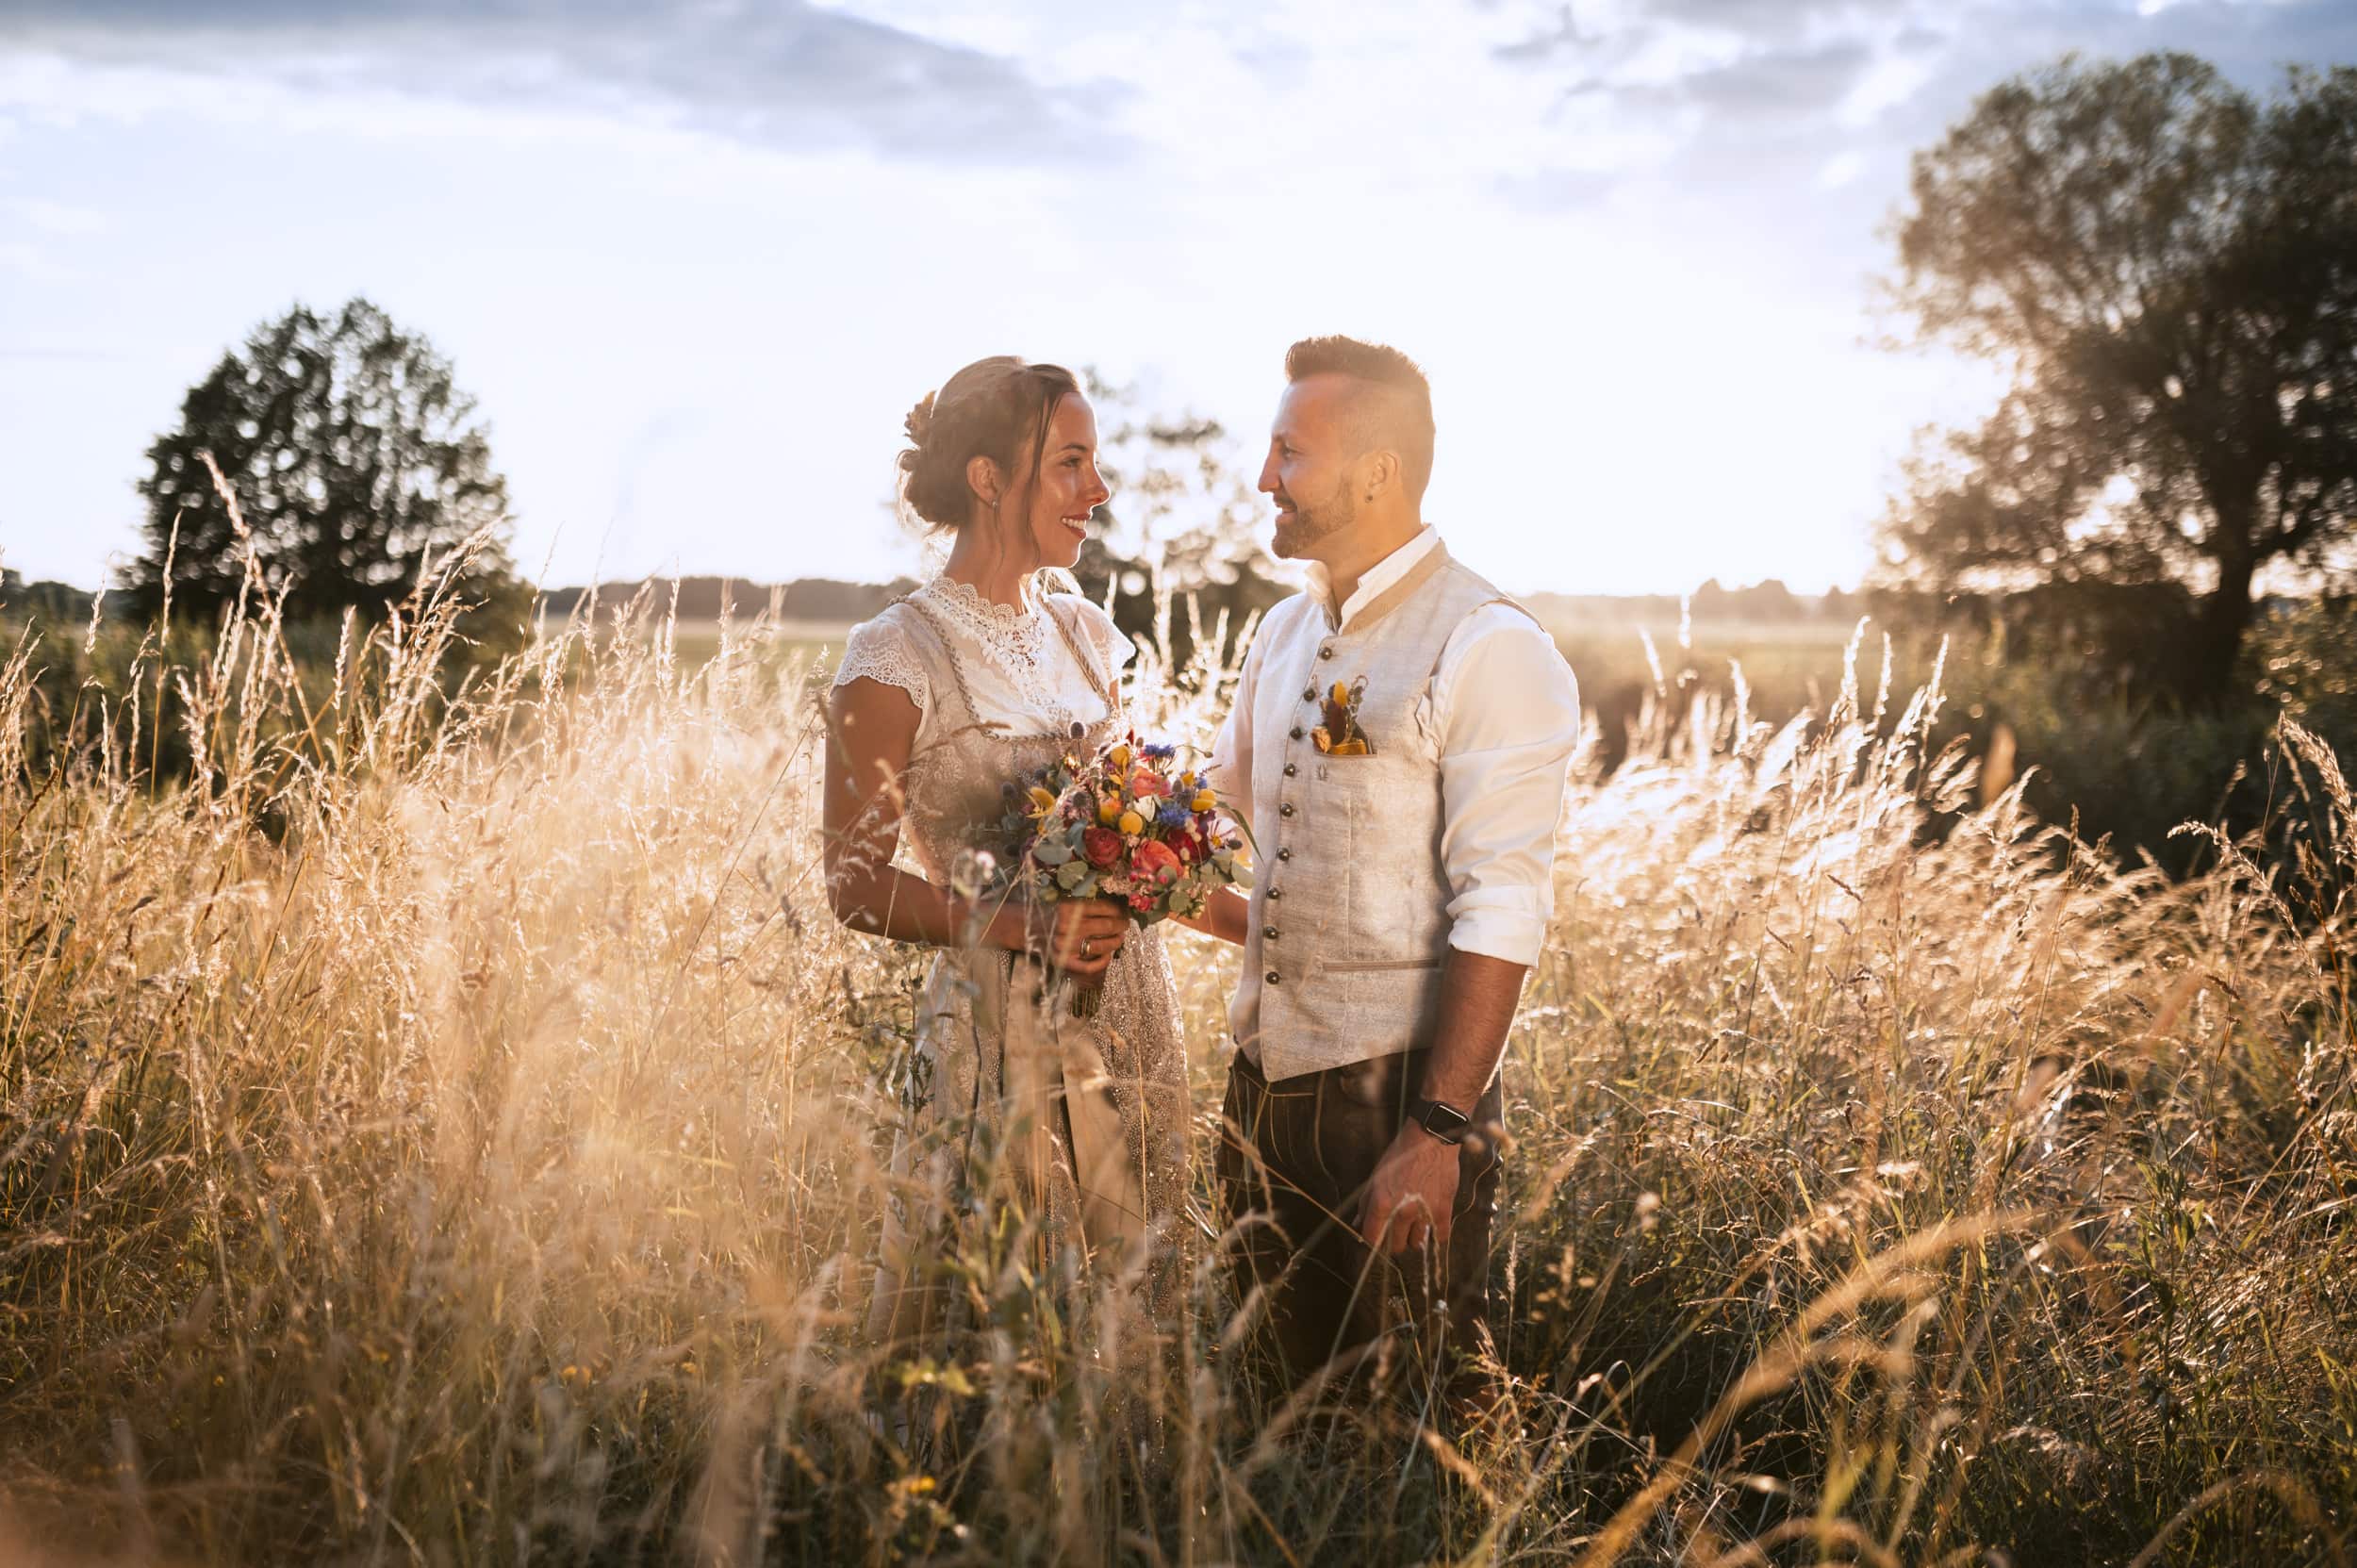 Das Brautpaar bei einem Hochzeitshooting in einem Feld mit hohem Gras in Thierhaupten beim Sonnenuntergang.